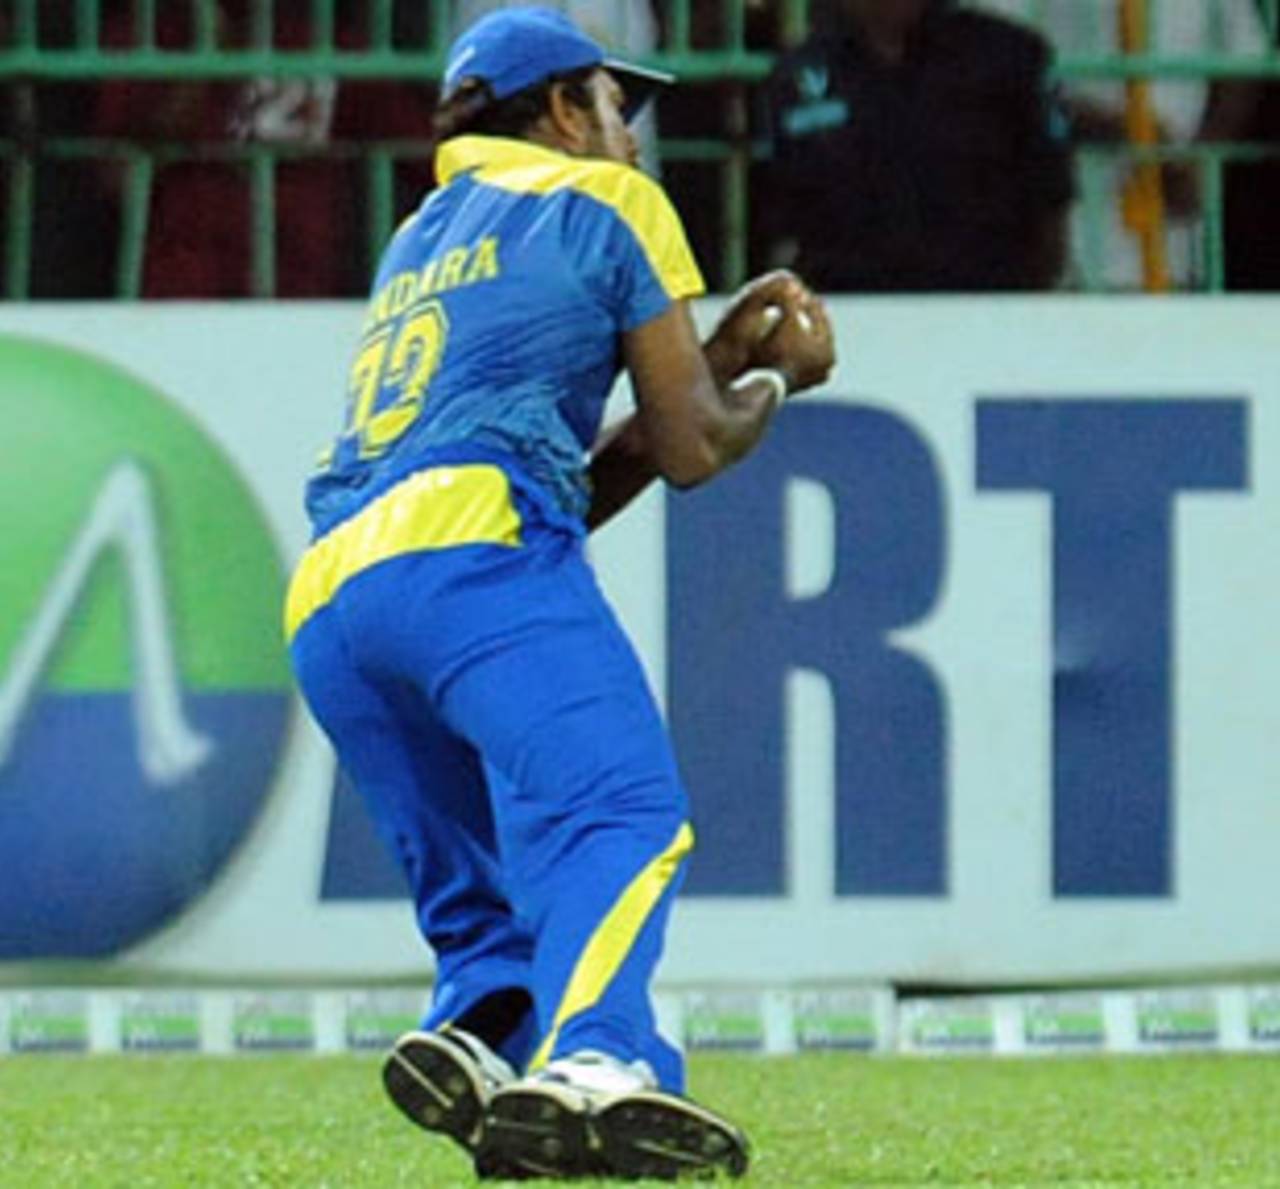 Malinga Bandara takes a catch to dismiss Jesse Ryder, Sri Lanka v New Zealand, 1st Twenty20, Colombo, September 2, 2009